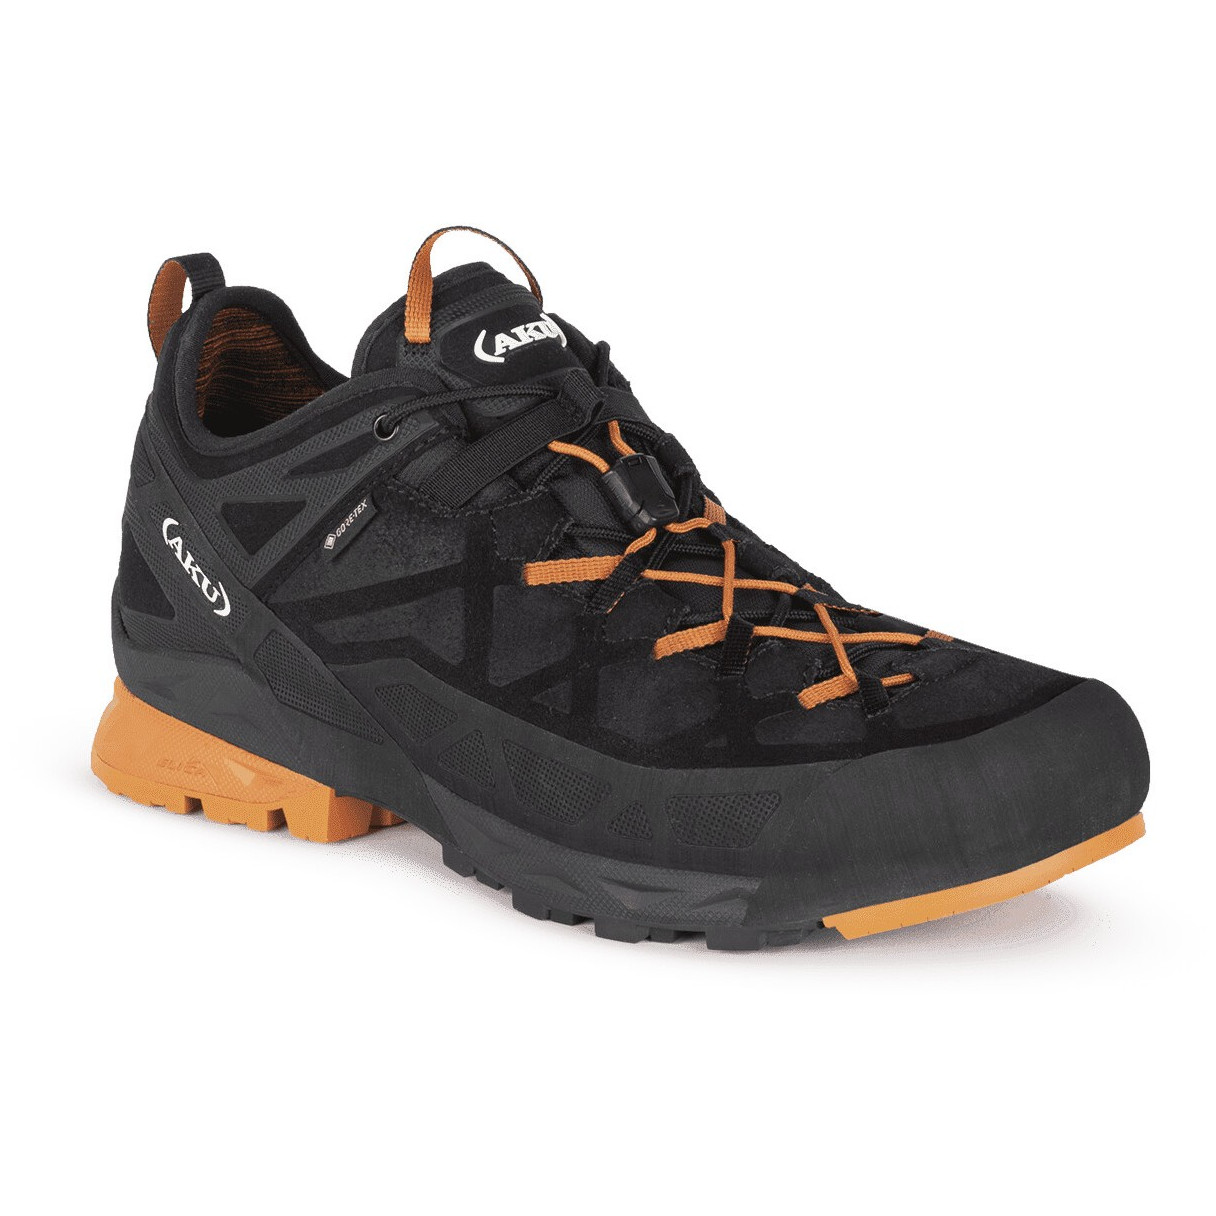 Pánské boty Aku Rock DFS Gtx Velikost bot (EU): 44 / Barva: černá/oranžová